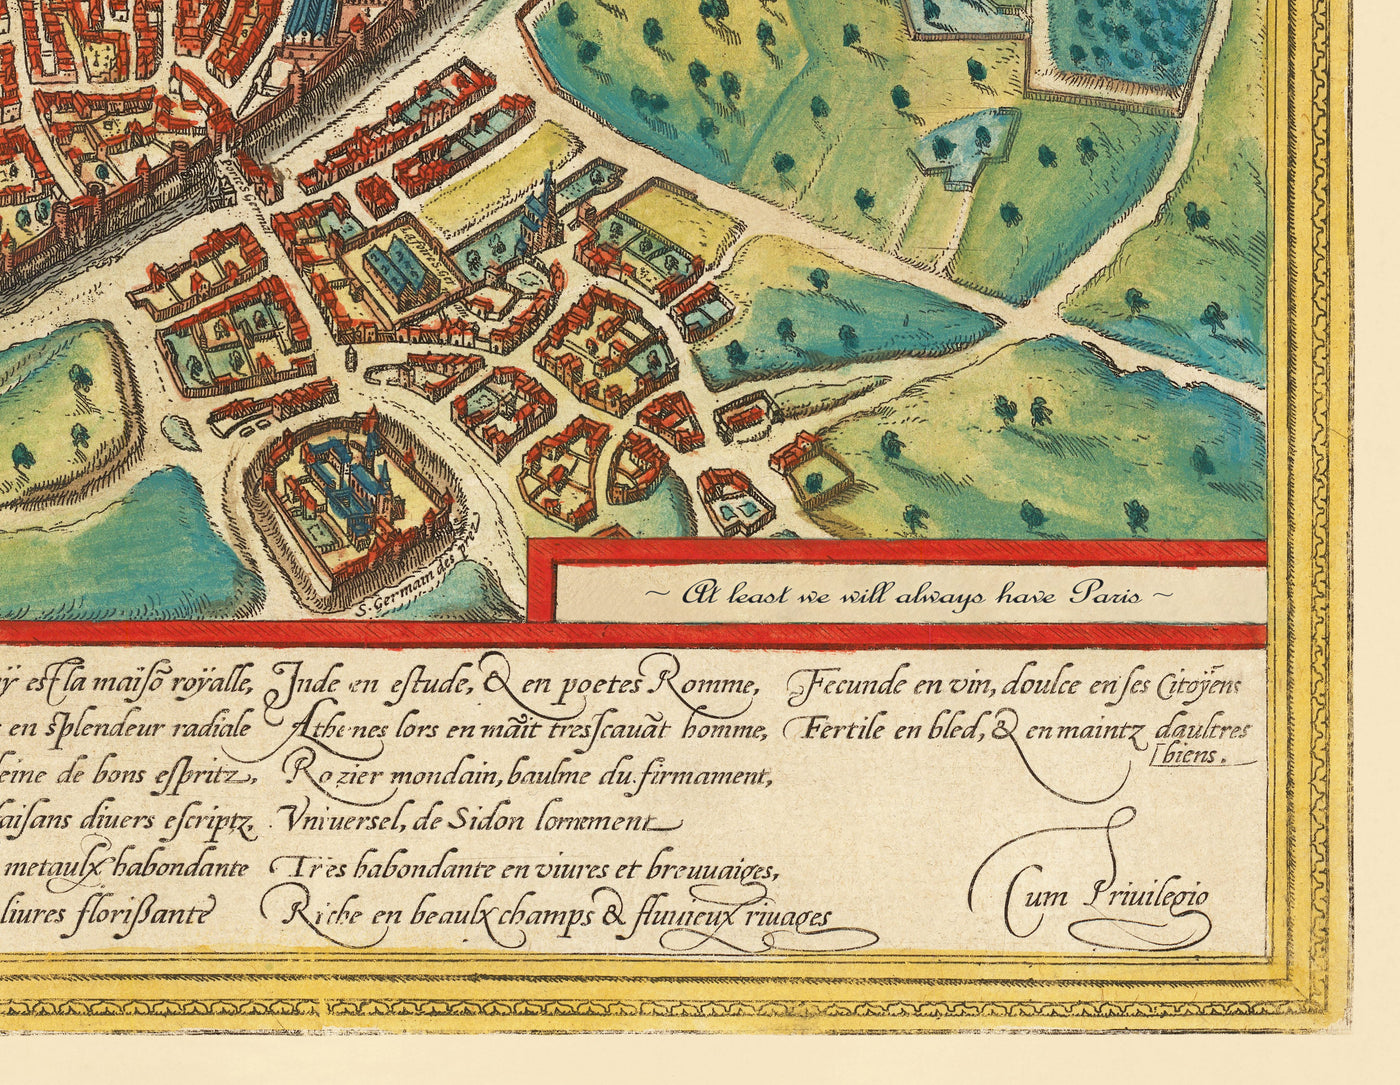 Ancienne carte d'Amsterdam en 1766 par Frederik Willem Greebe - L'Amstel, l'église Oude, Nieuwevaart, le Palais Royal, Lastage